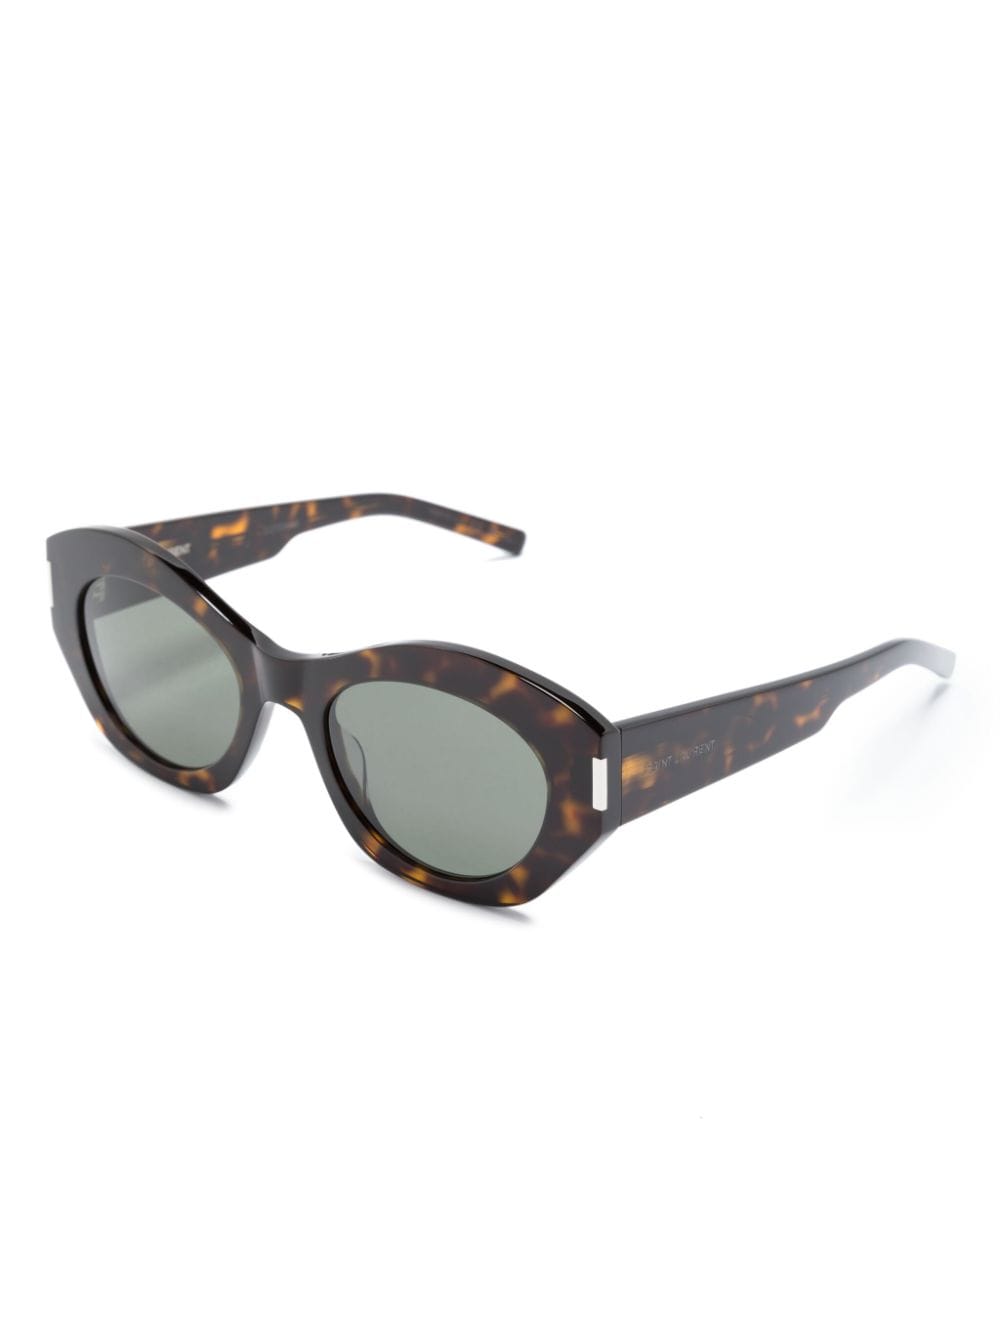 SL 634 NOVA 猫眼框太阳眼镜